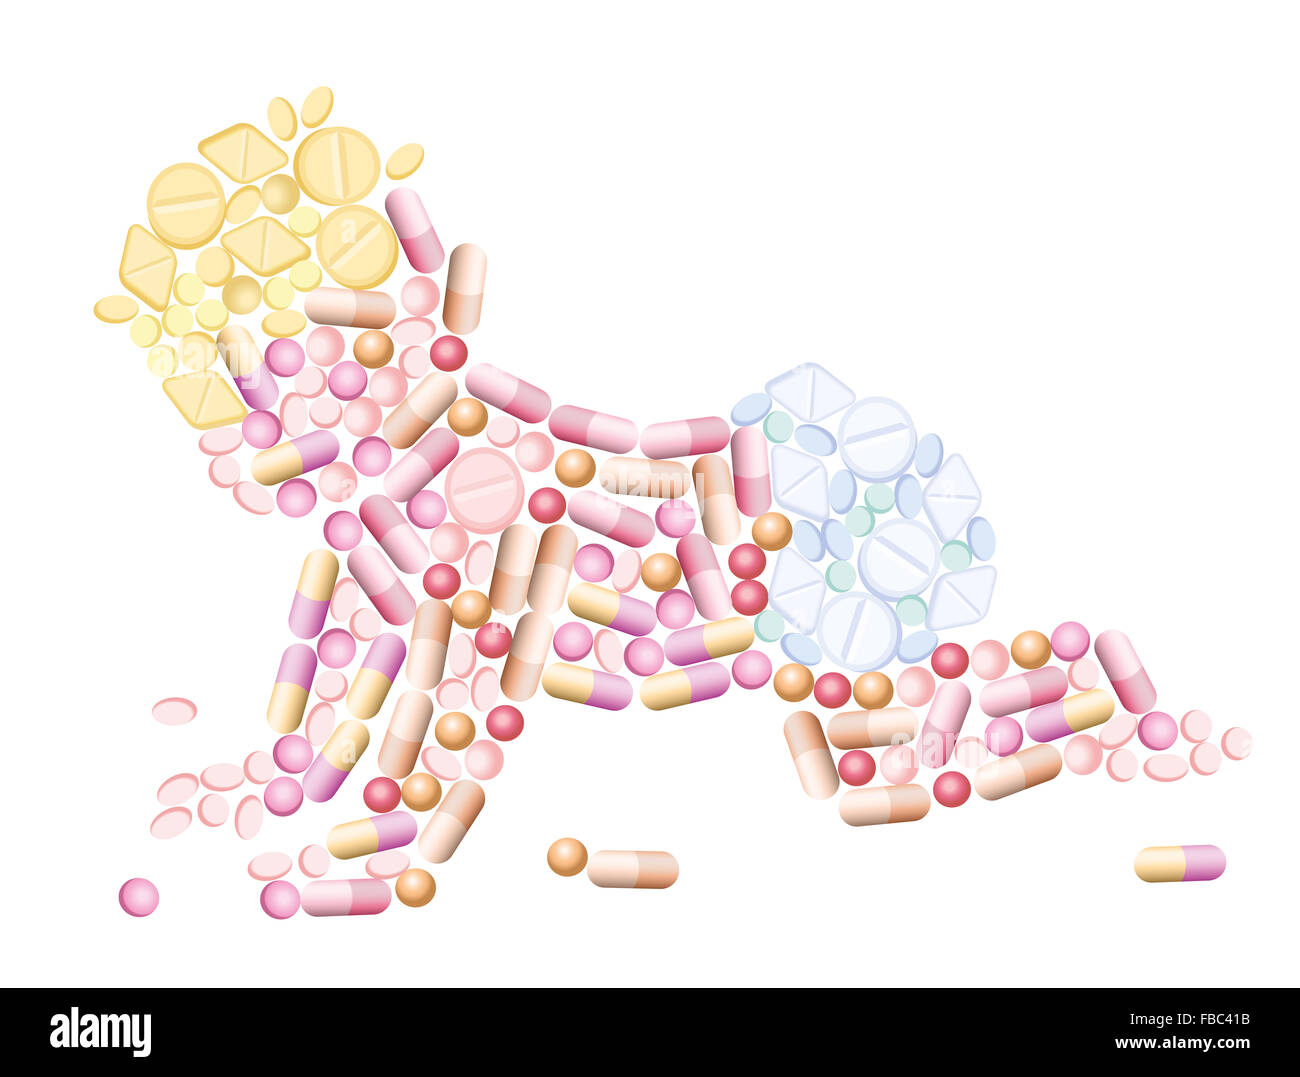 Pillen - Medikamente, die die Silhouette eines Babys, als Symbol für pharmazeutische und medizinische Themen - Bild prägen. Stockfoto